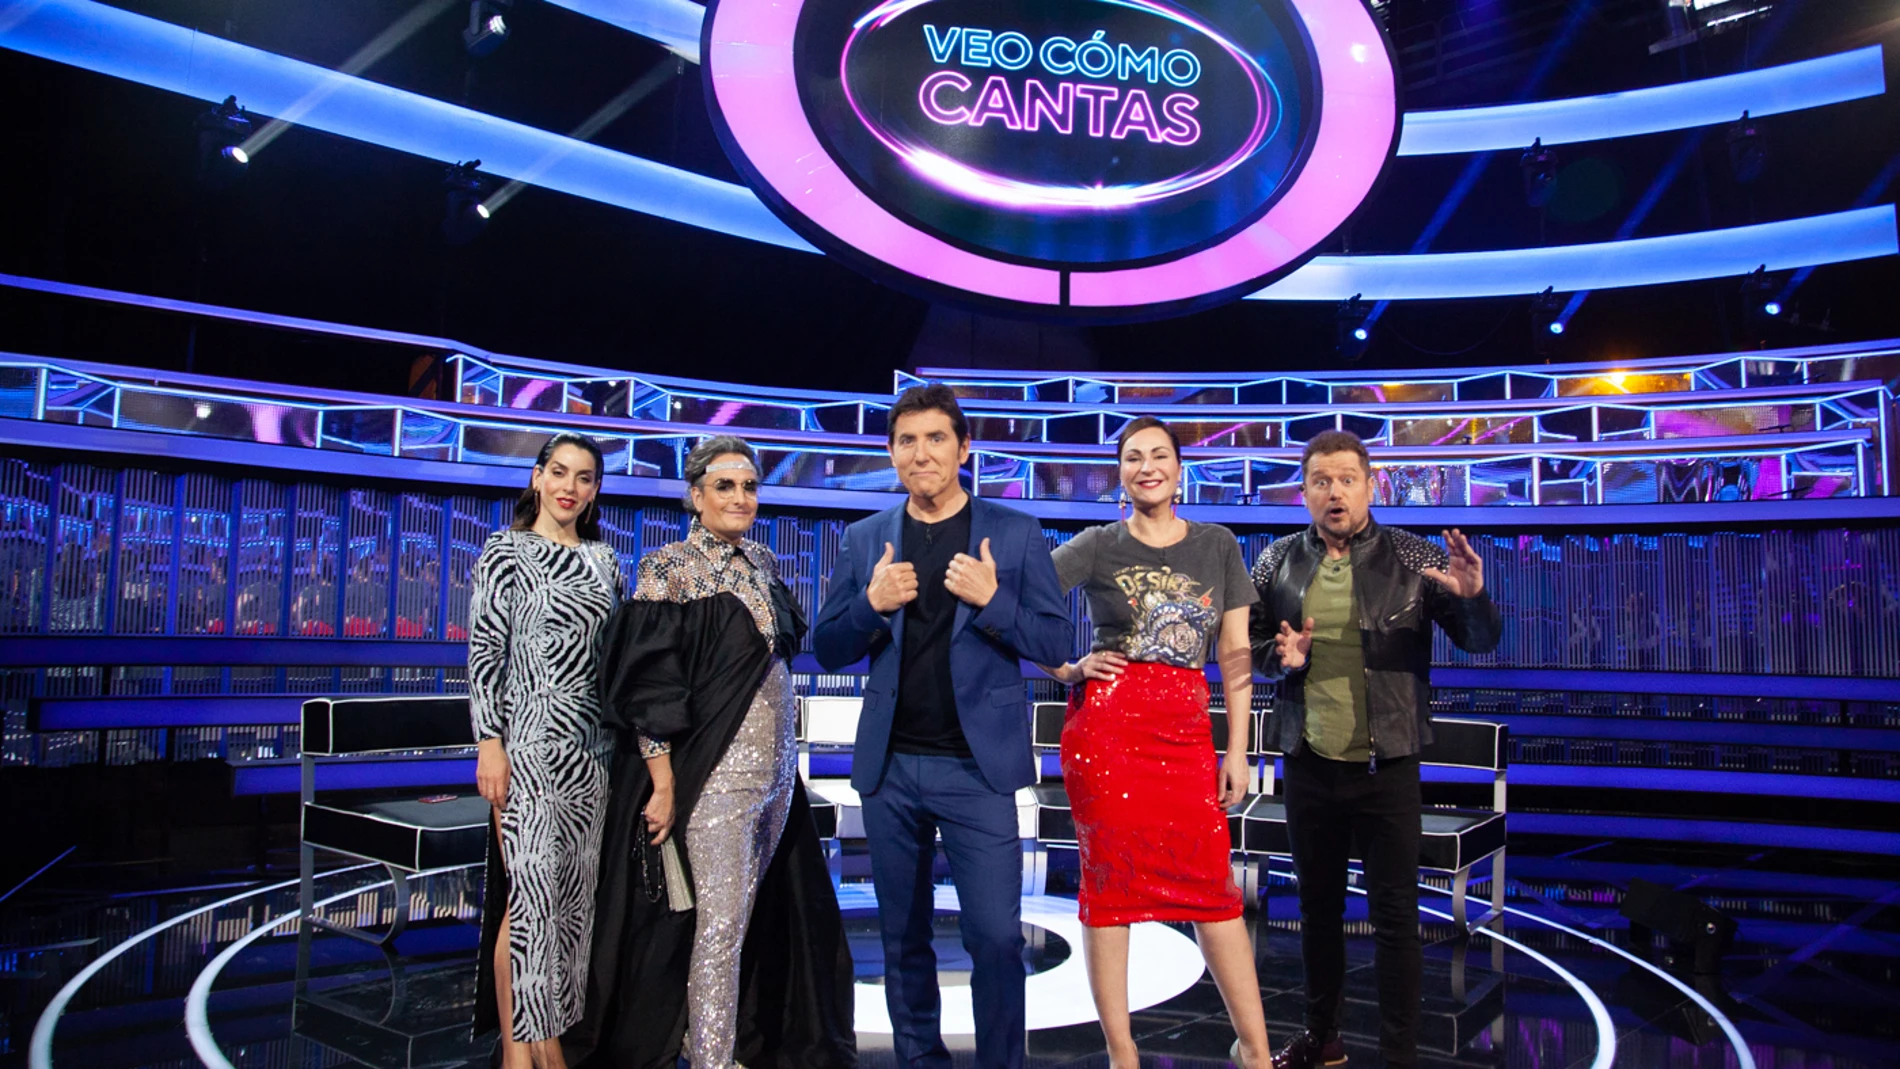 Arrancan las grabaciones de ‘Veo cómo cantas’, el nuevo gran formato de Antena 3 presentado por Manel Fuentes